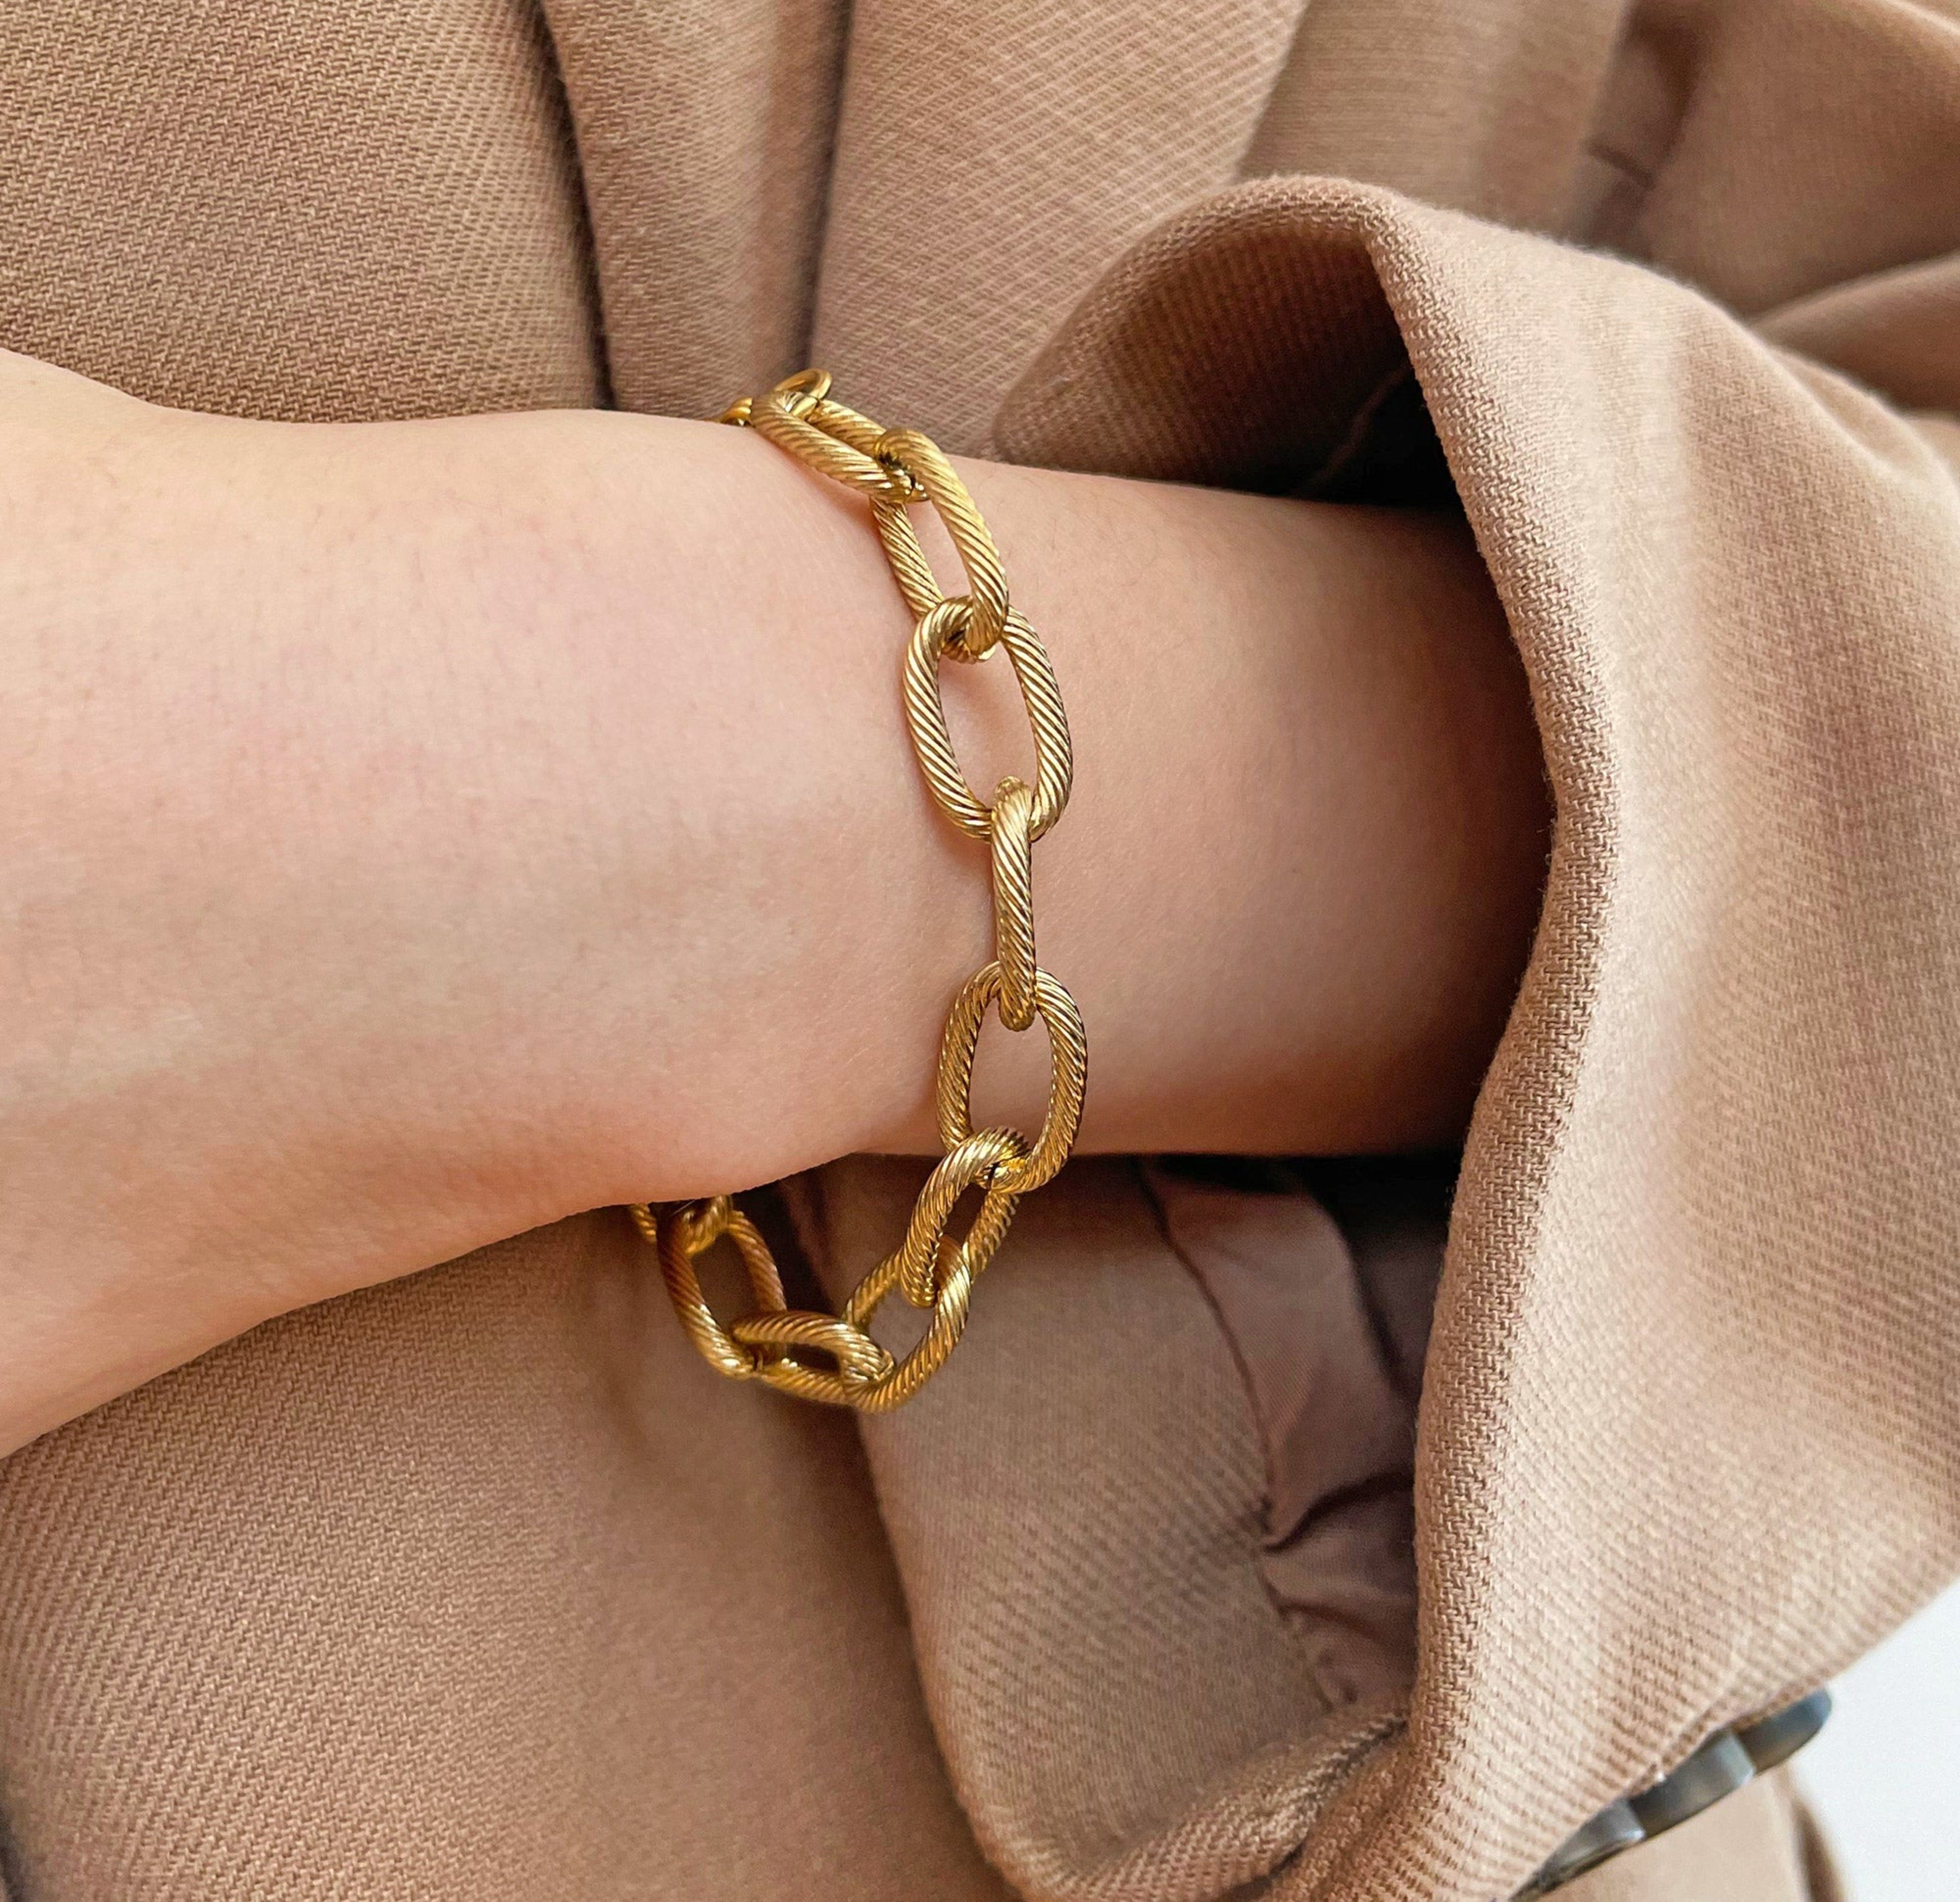 gold chain bracelet waterproof jewelry